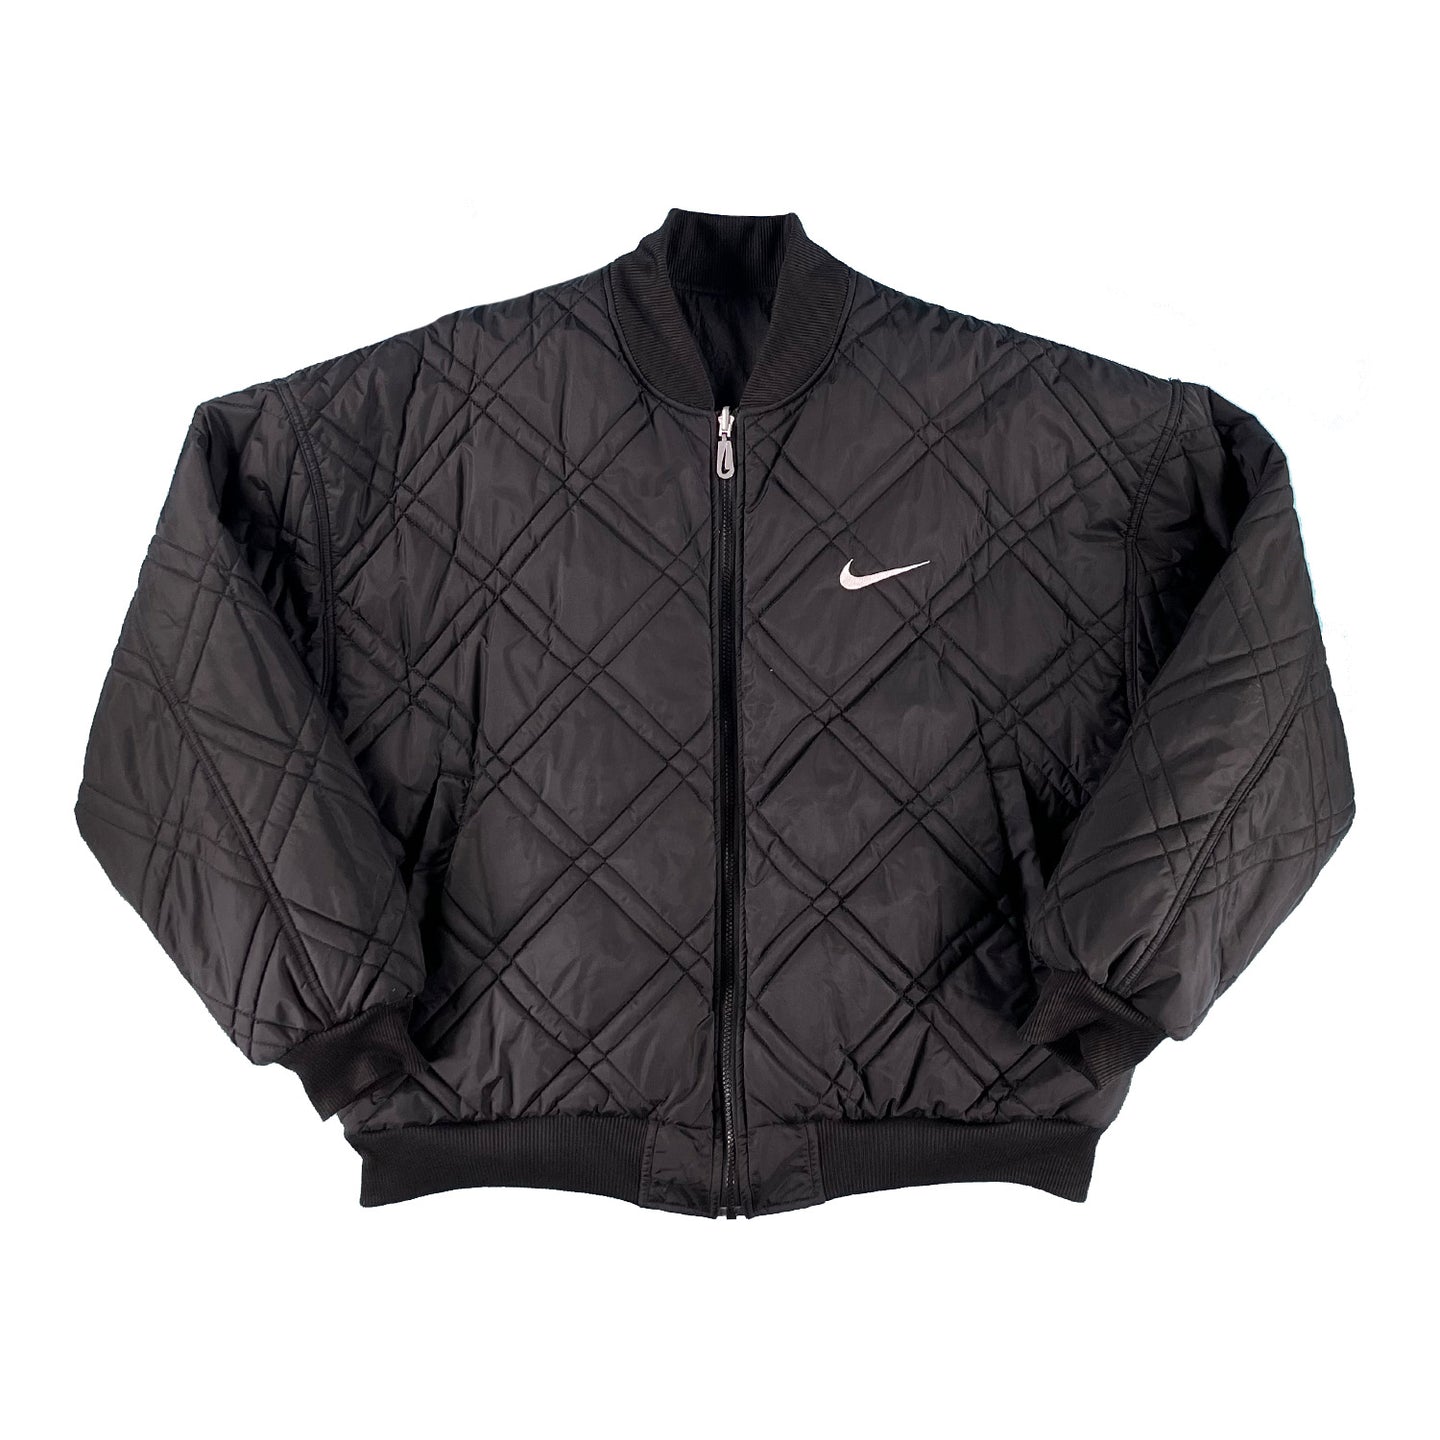 '90s Nike reversible puffer jacket XL